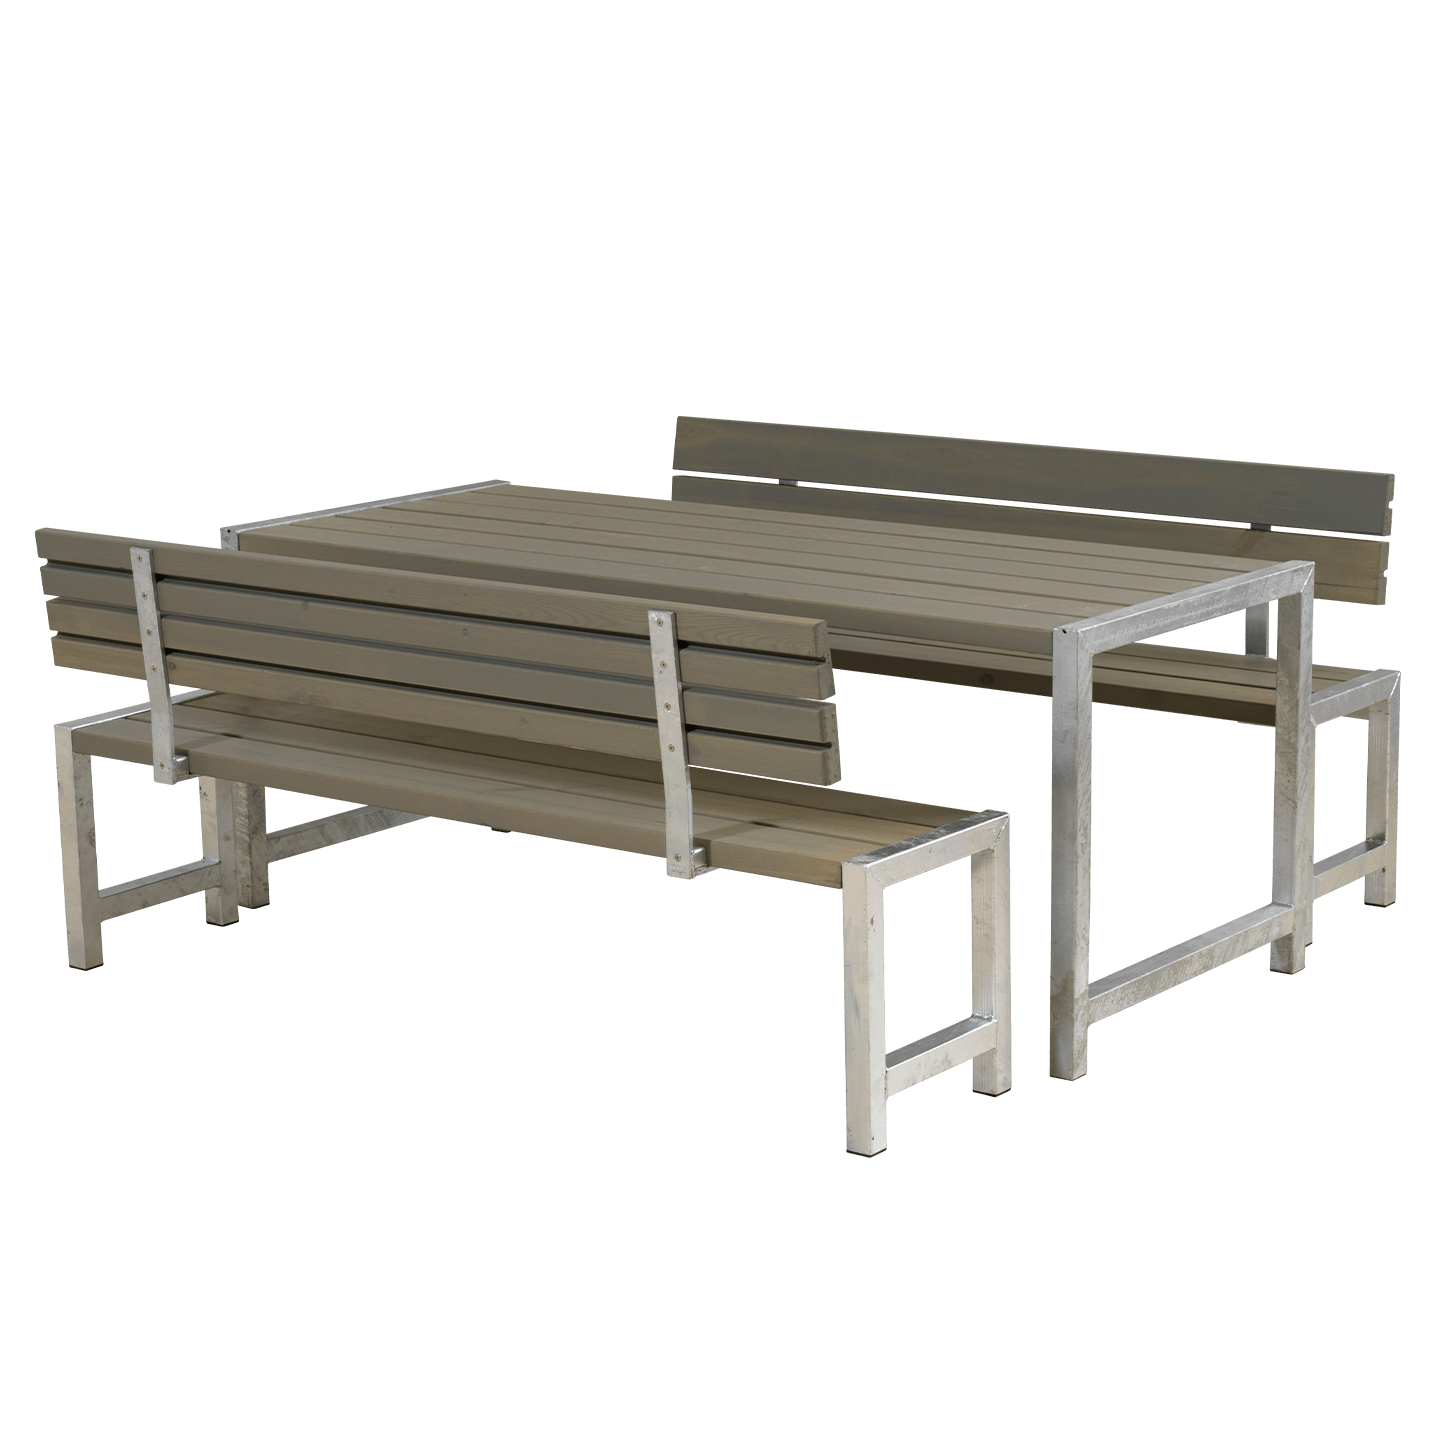 Plankengarnitur mit 2 Rückenlehnen 1 Tisch und 2 Bänke und 2 Rückenlehnen 186 cm Graubraun